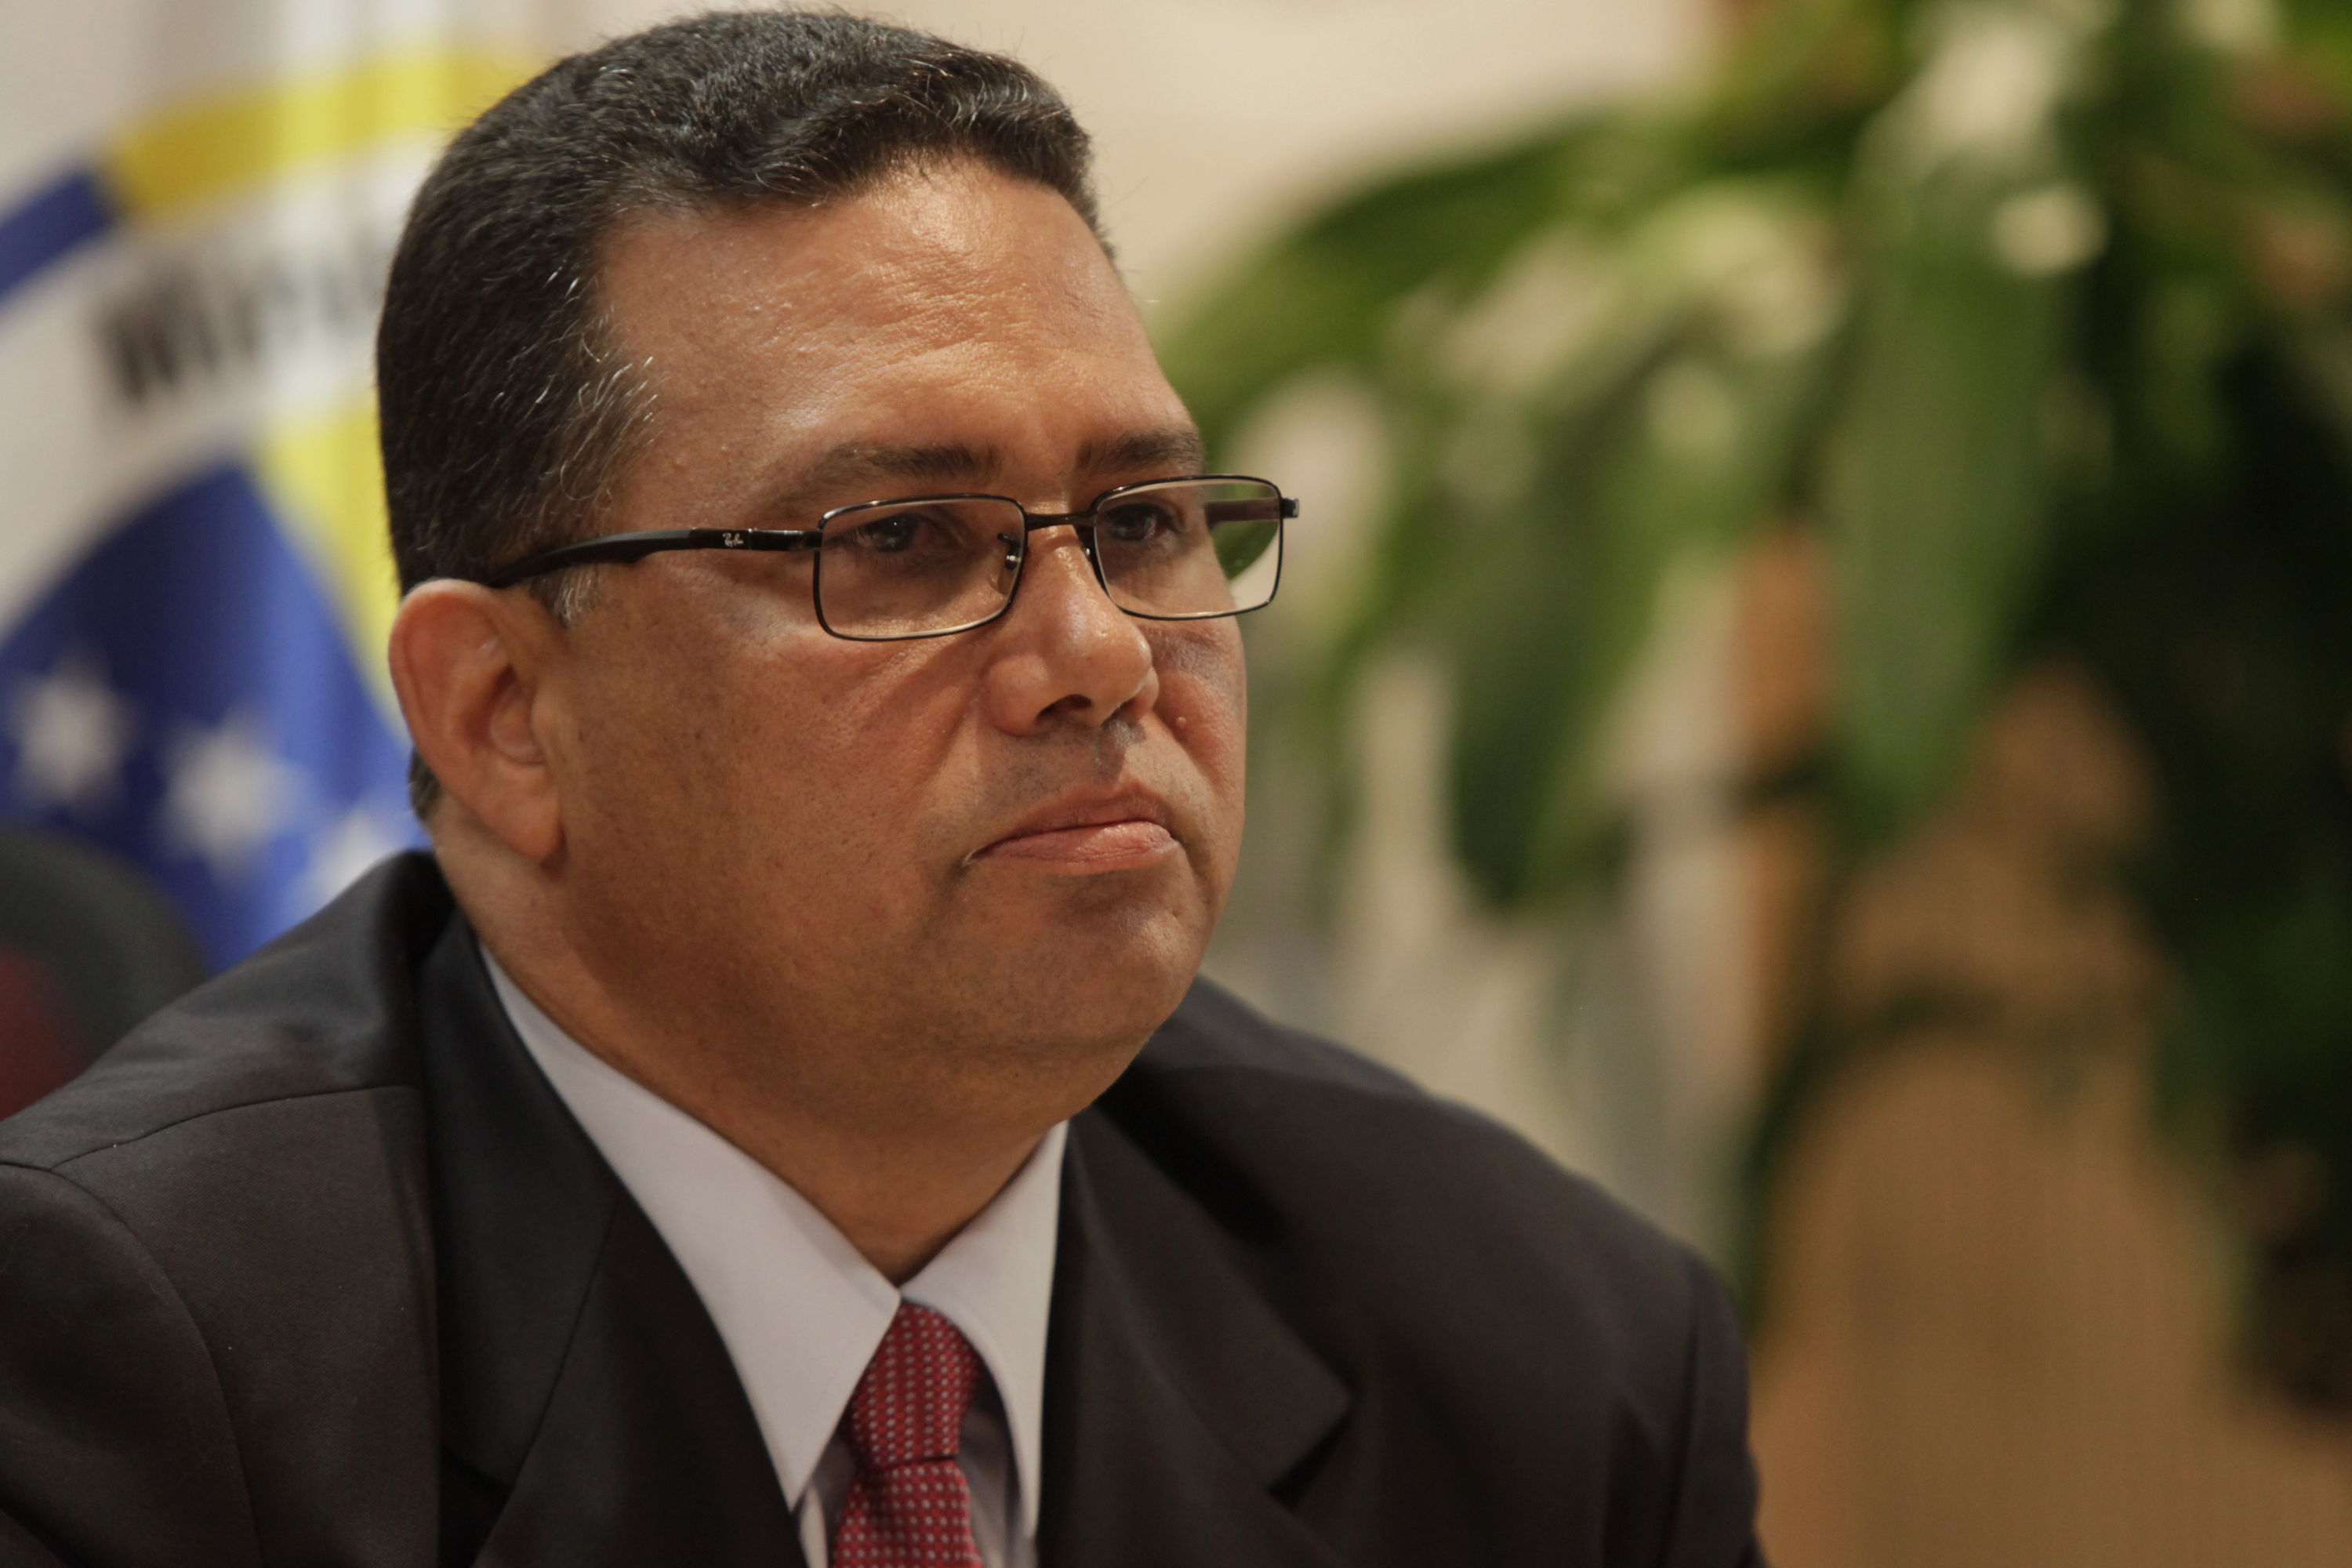 González López: Integrantes de la MUD están involucrados en ataque al sistema bancario